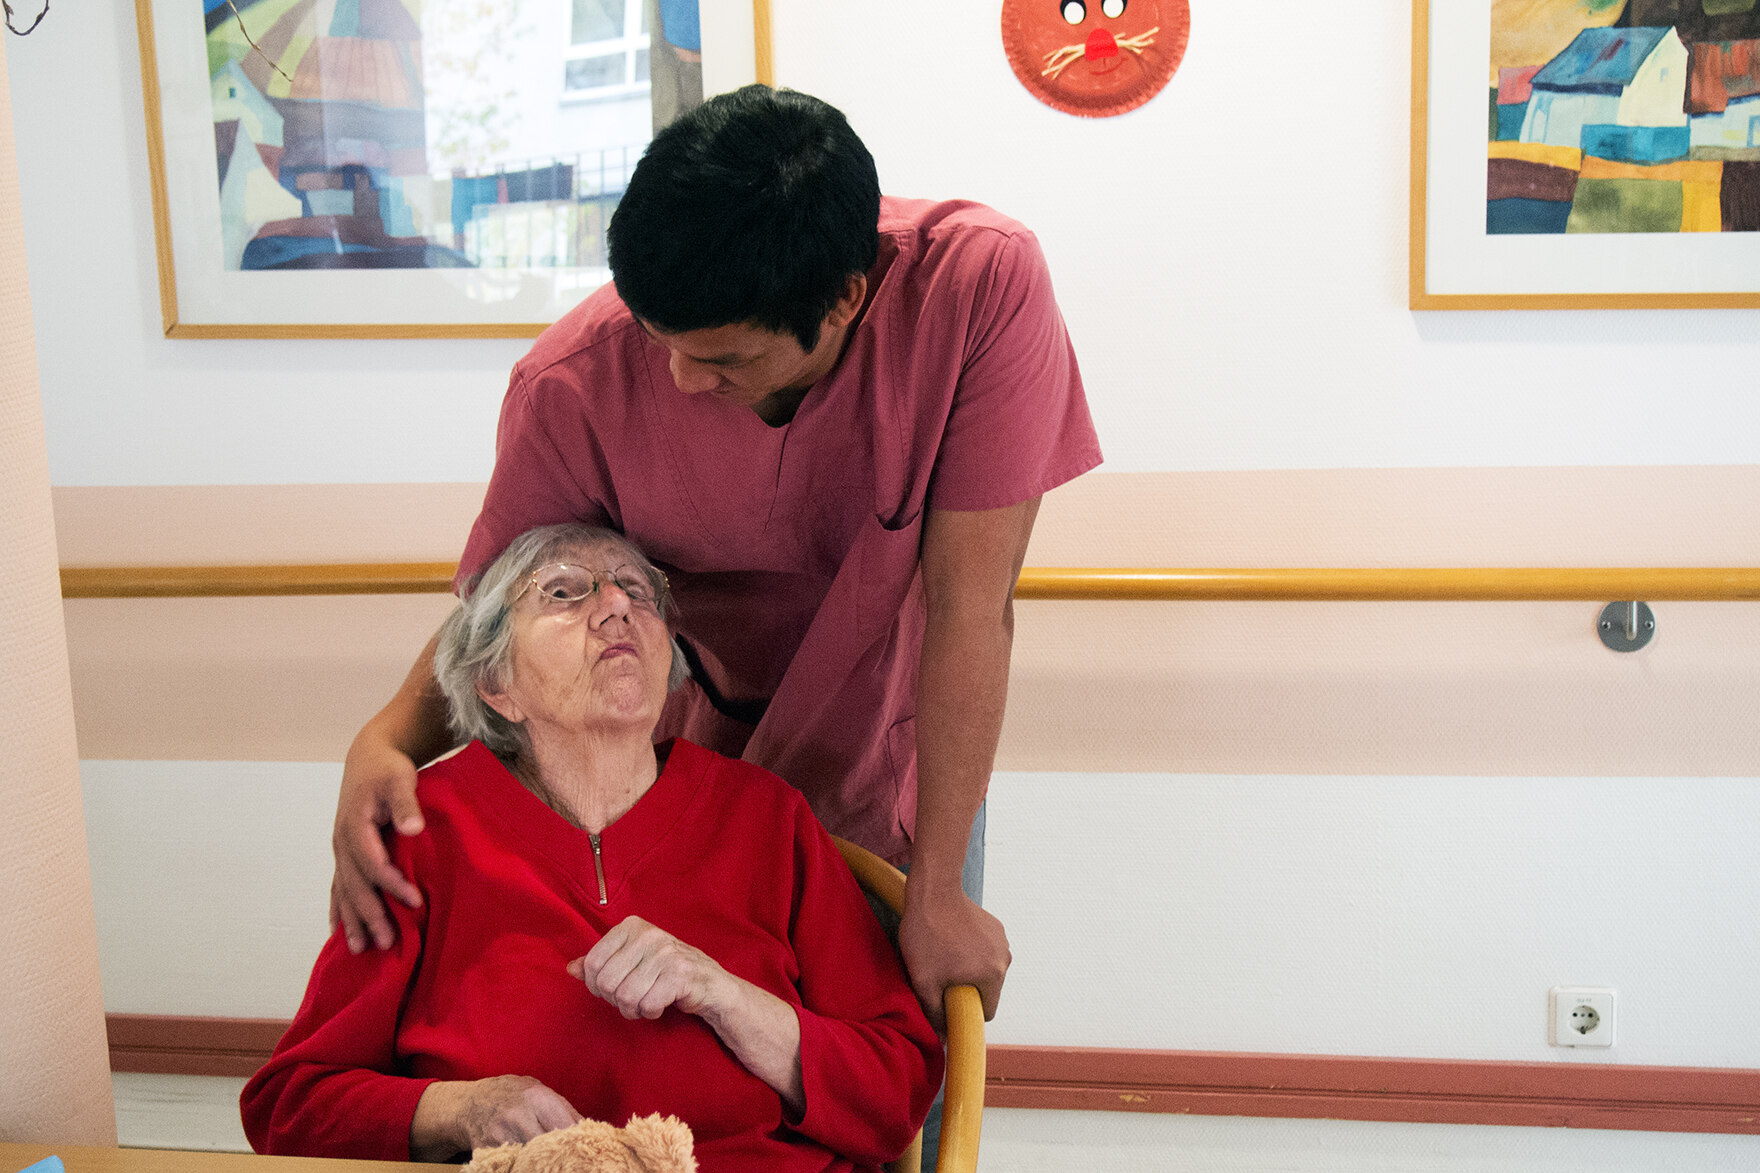 Ein Pfleger legt vertraut seine Hand an die Schulter einer älteren Bewohnerin und spricht mit ihr. Sie schaut ihn nach oben hin an.